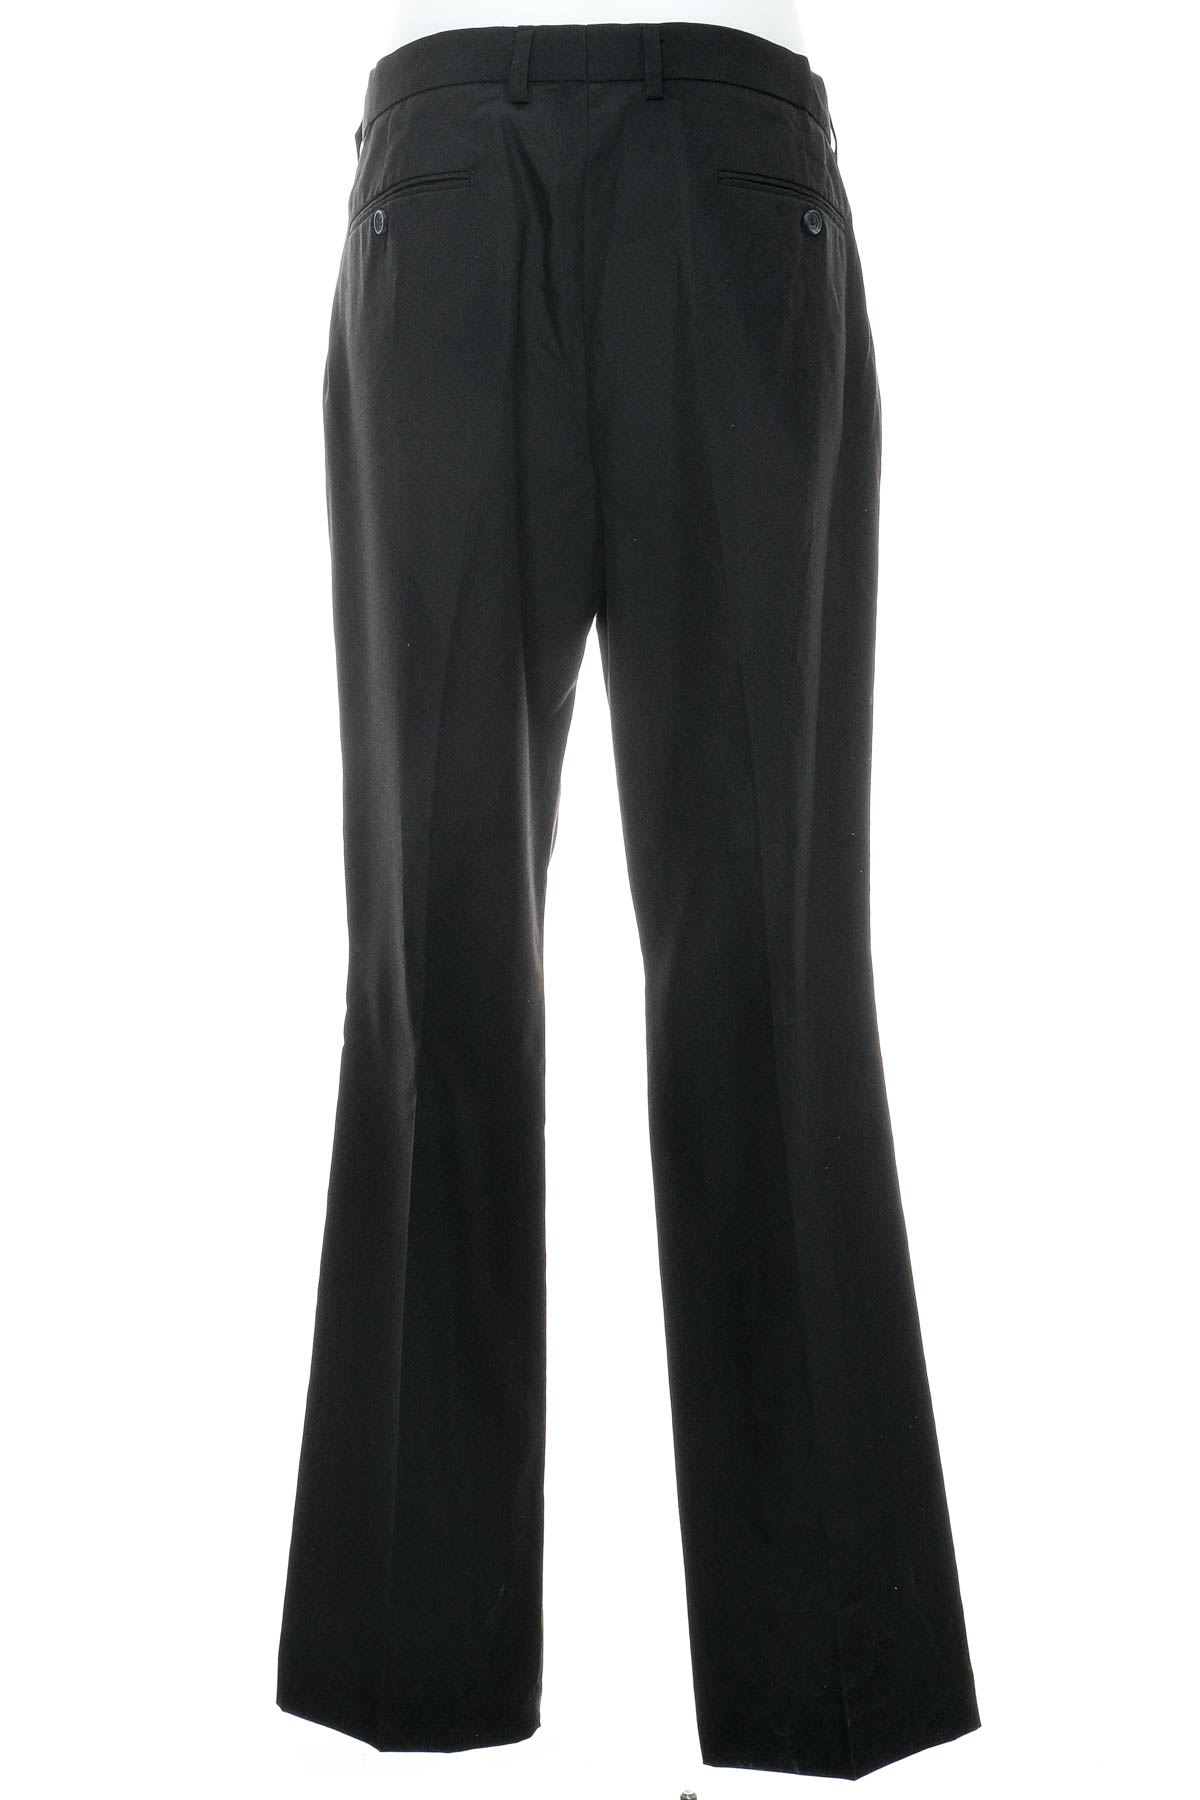 Men's trousers - Bpc selection bonprix collection - 1